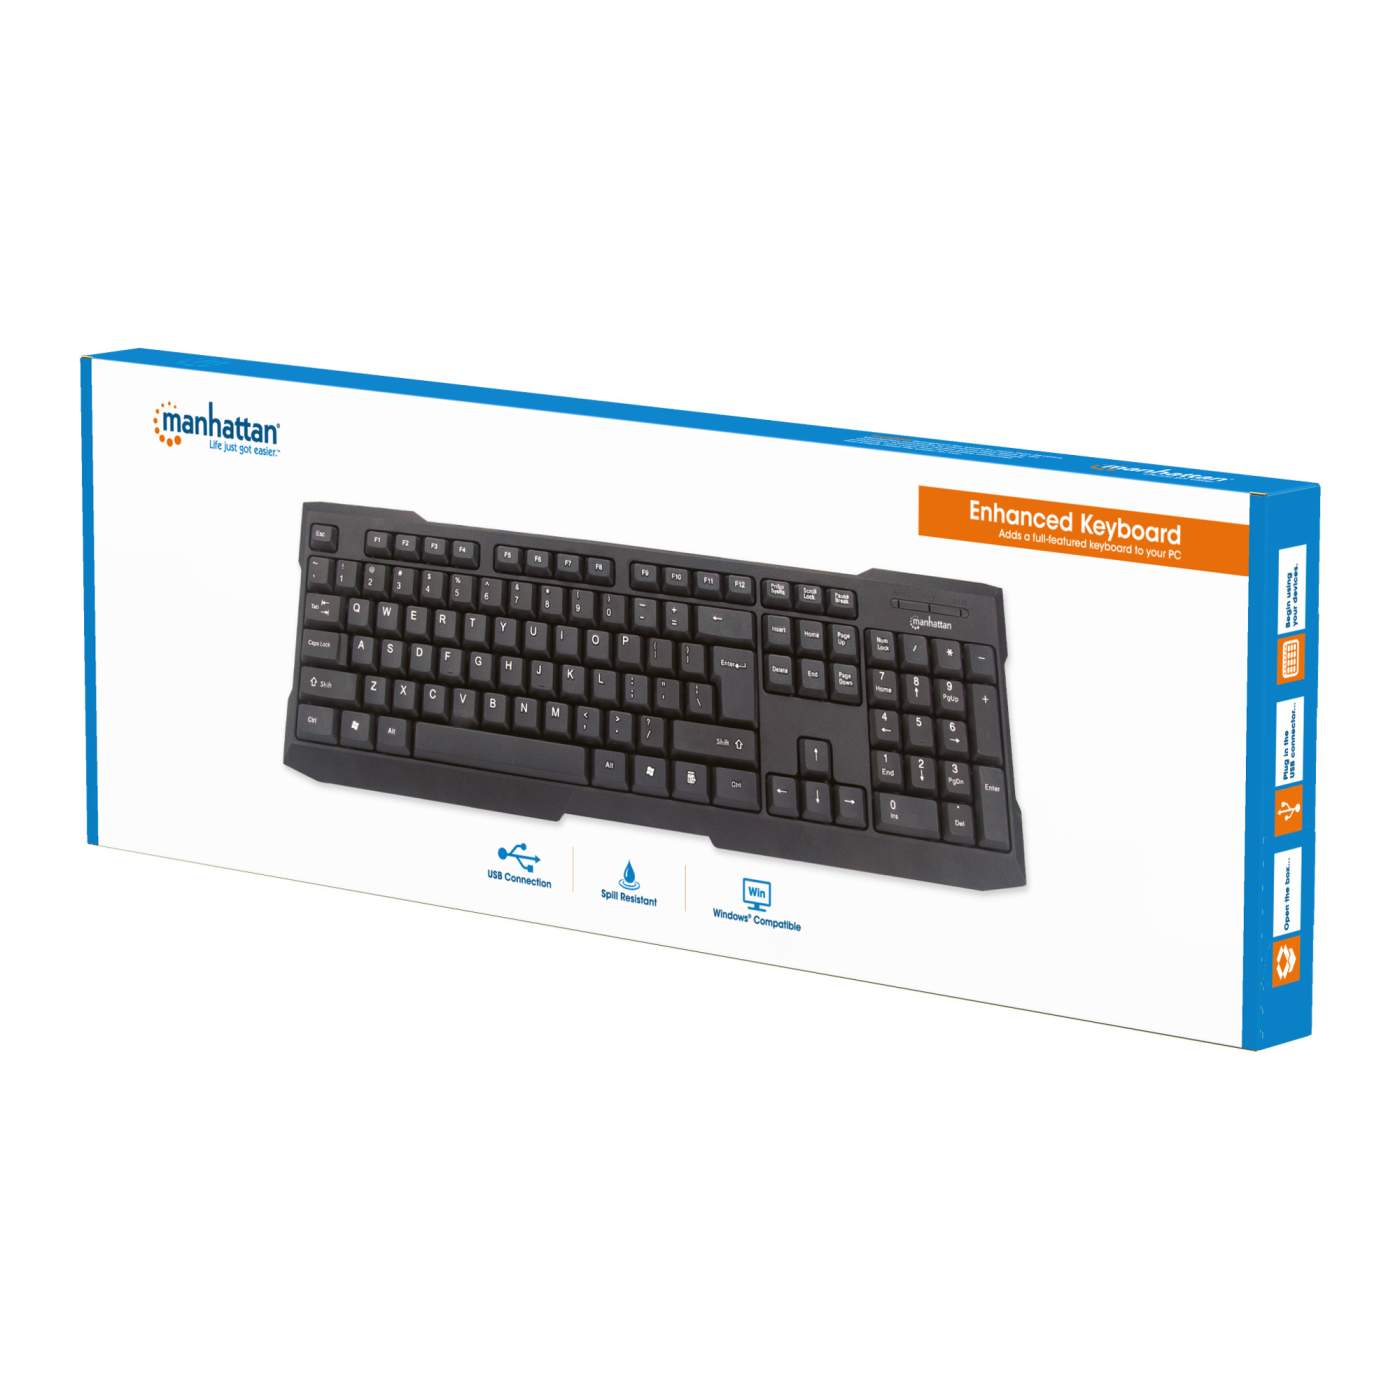 Enhanced Keyboard Packaging Image 2